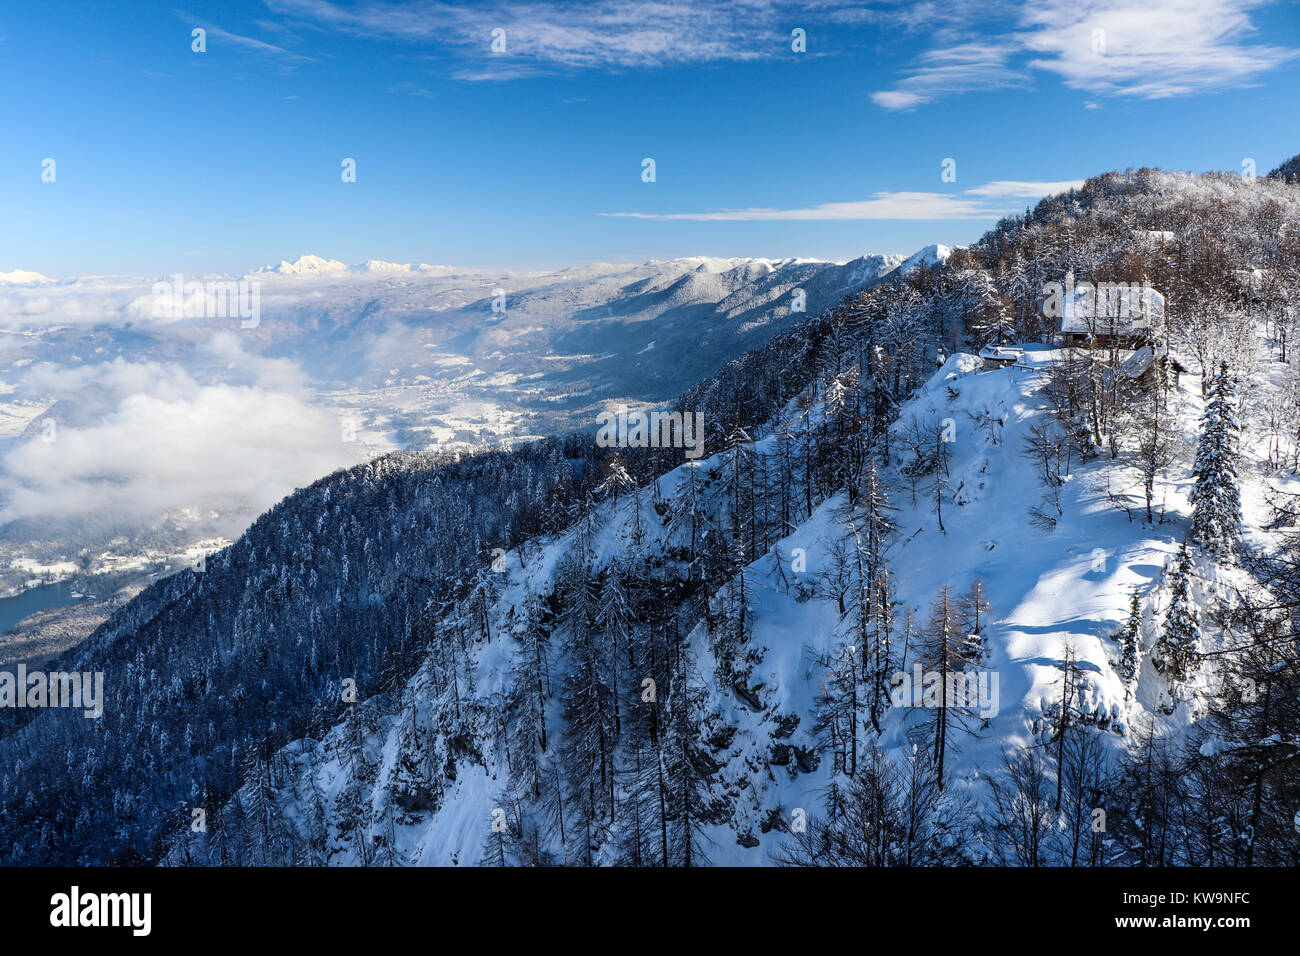 Une magnifique auberge de montagne dans la station de ski de Vogel, Bohinj, Slovénie, est capturée dans cette image merveilleuse, parfait pour décorer une carte de Noël ou une carte postale. Banque D'Images